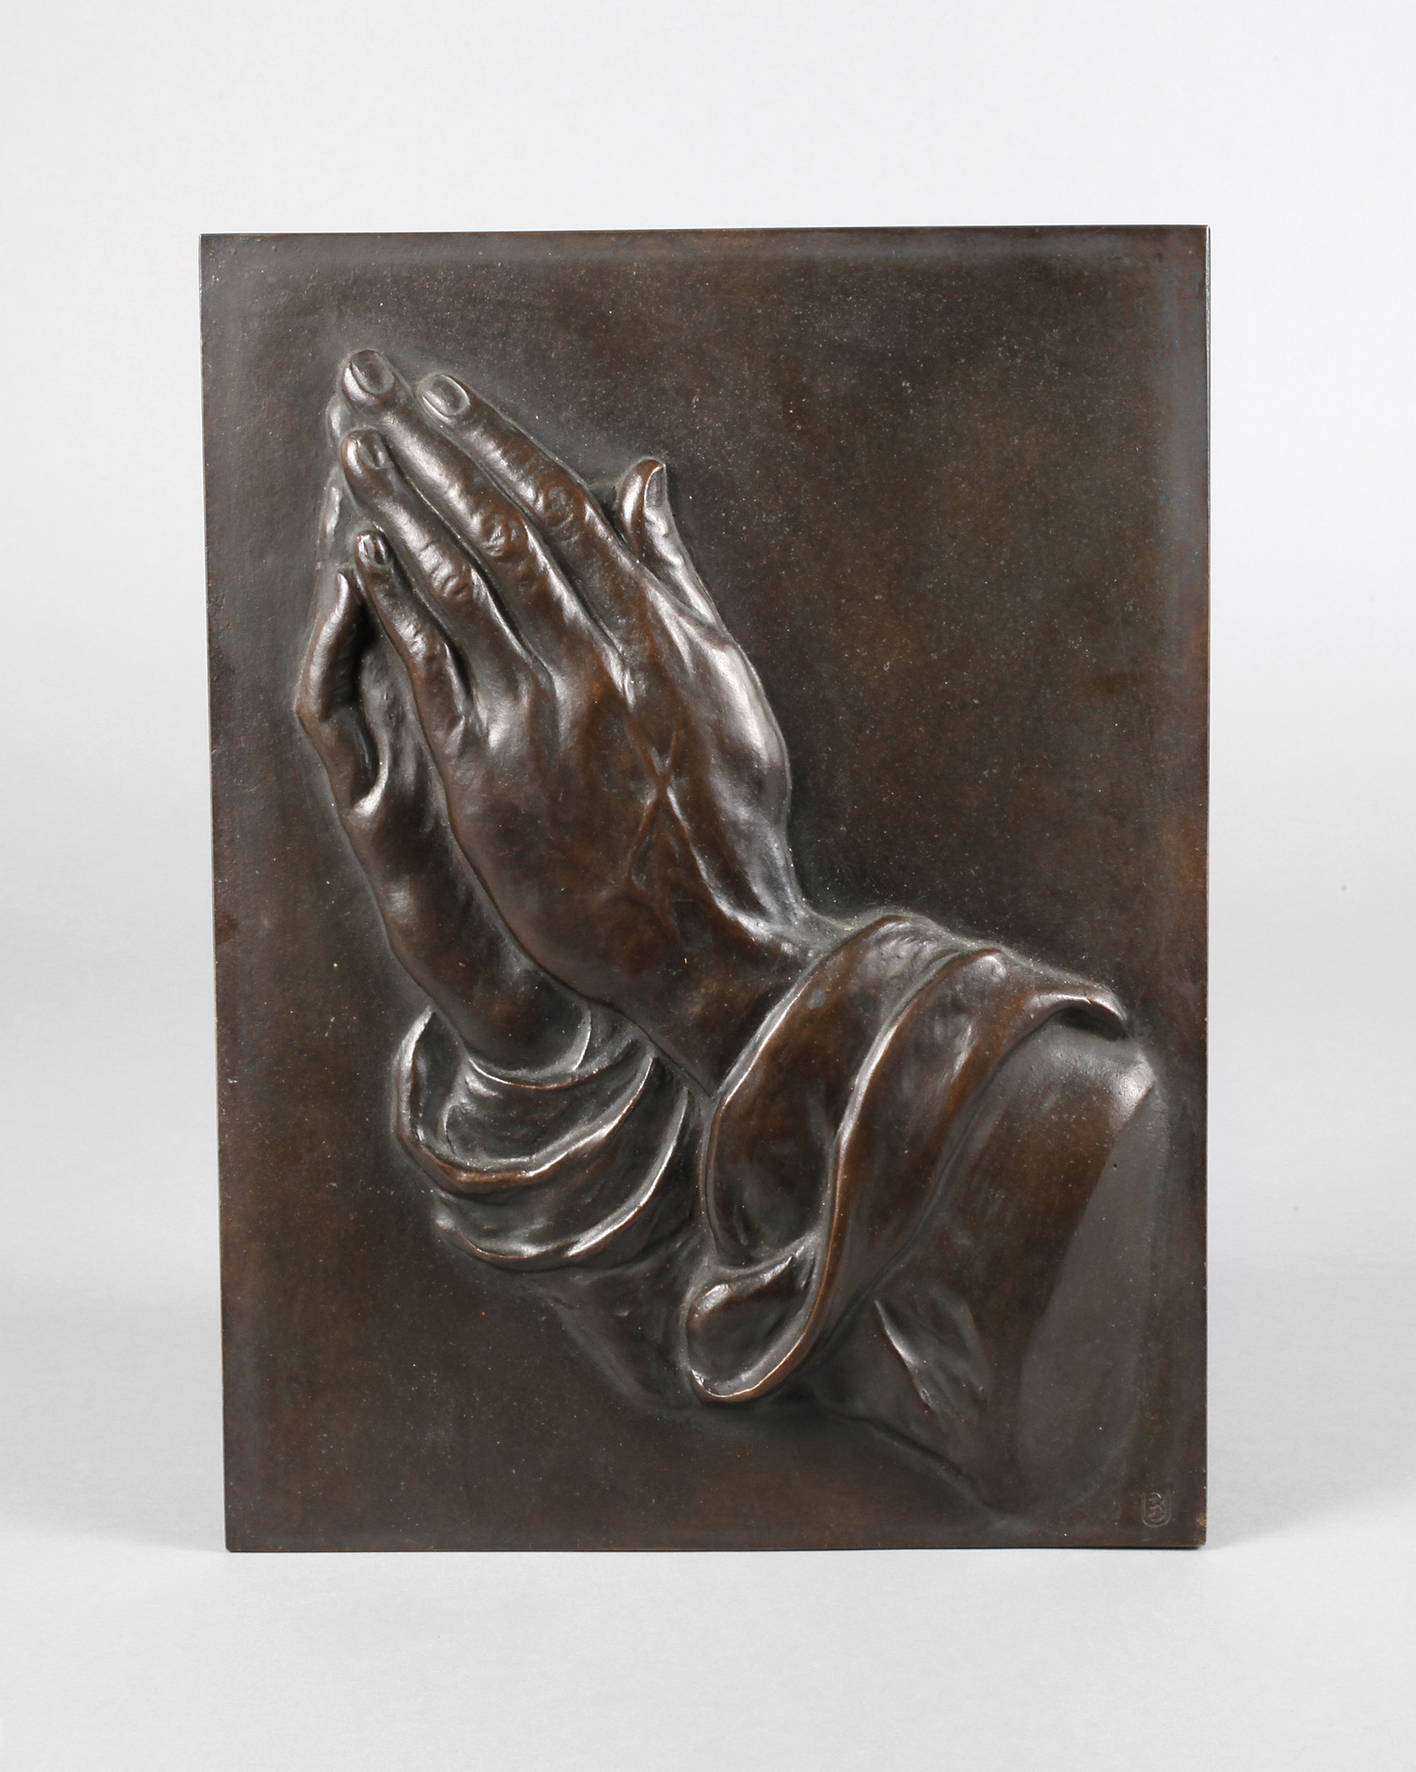 Bronzerelief ”Betende Hände” nach Albrecht Dürer